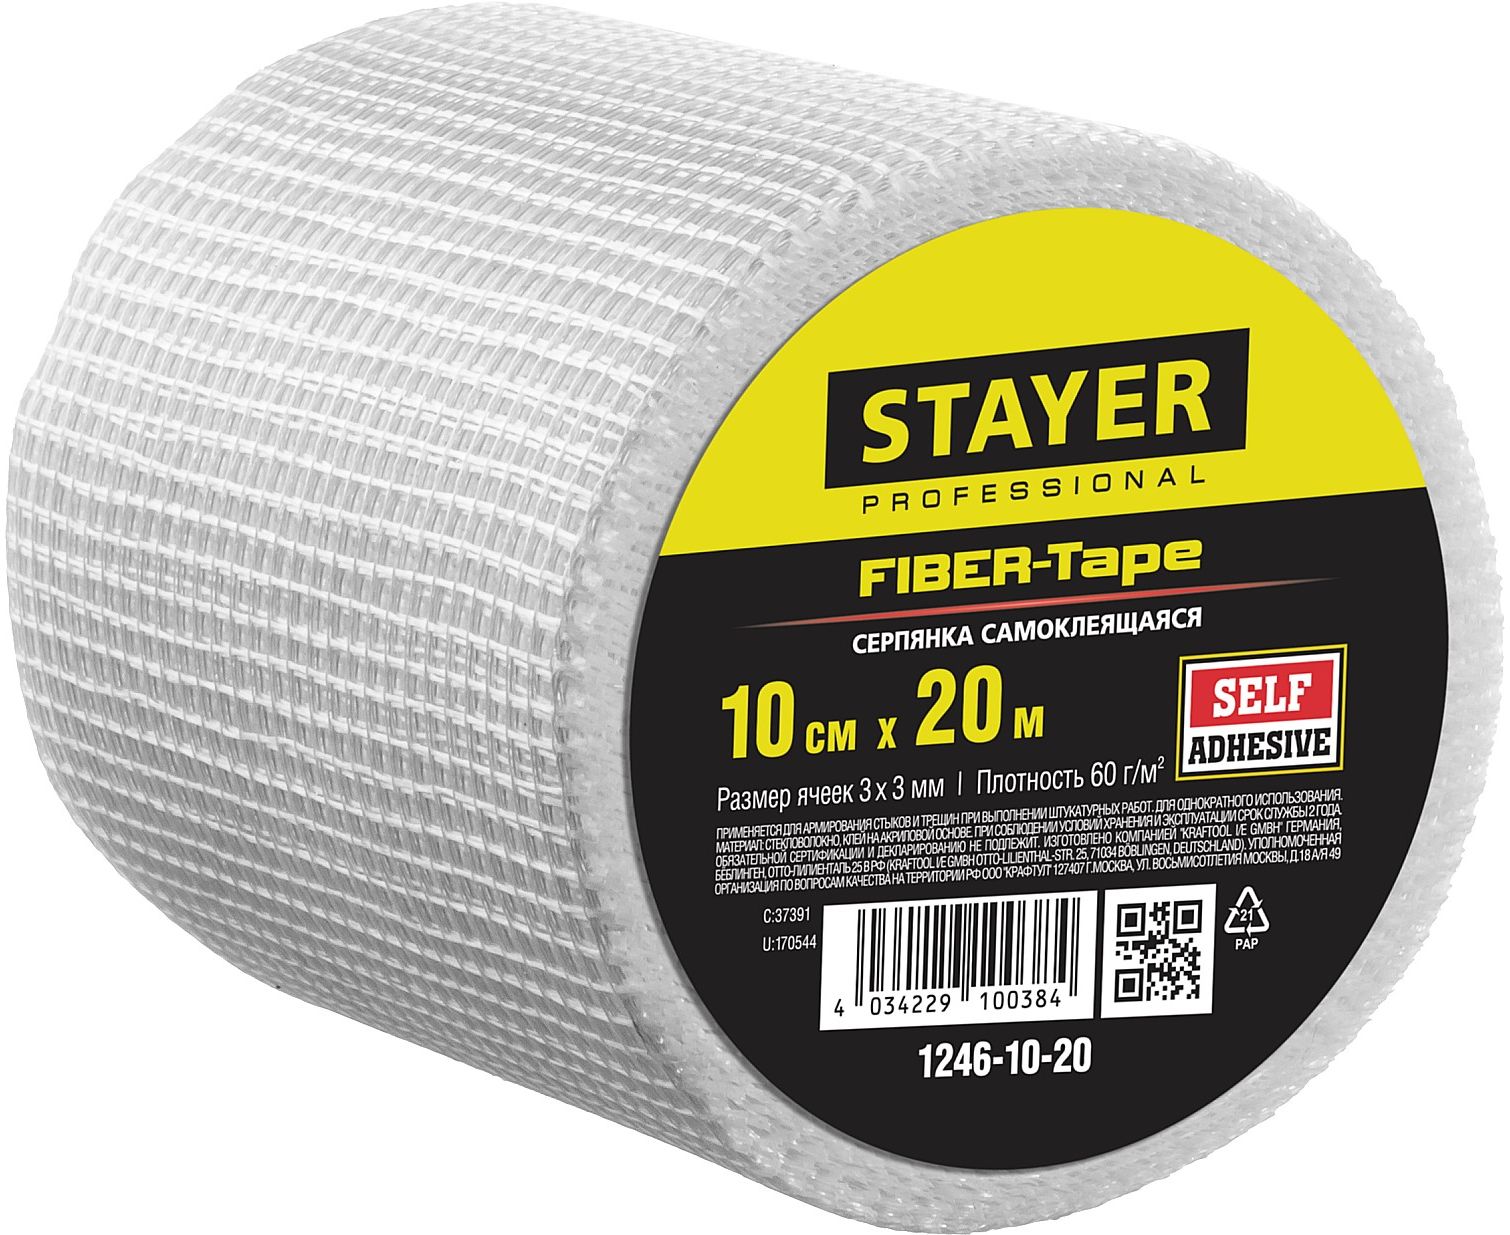 фото Серпянка самоклеящаяся stayer professional fiber-tape, 10 см х 20м 1246-10-20